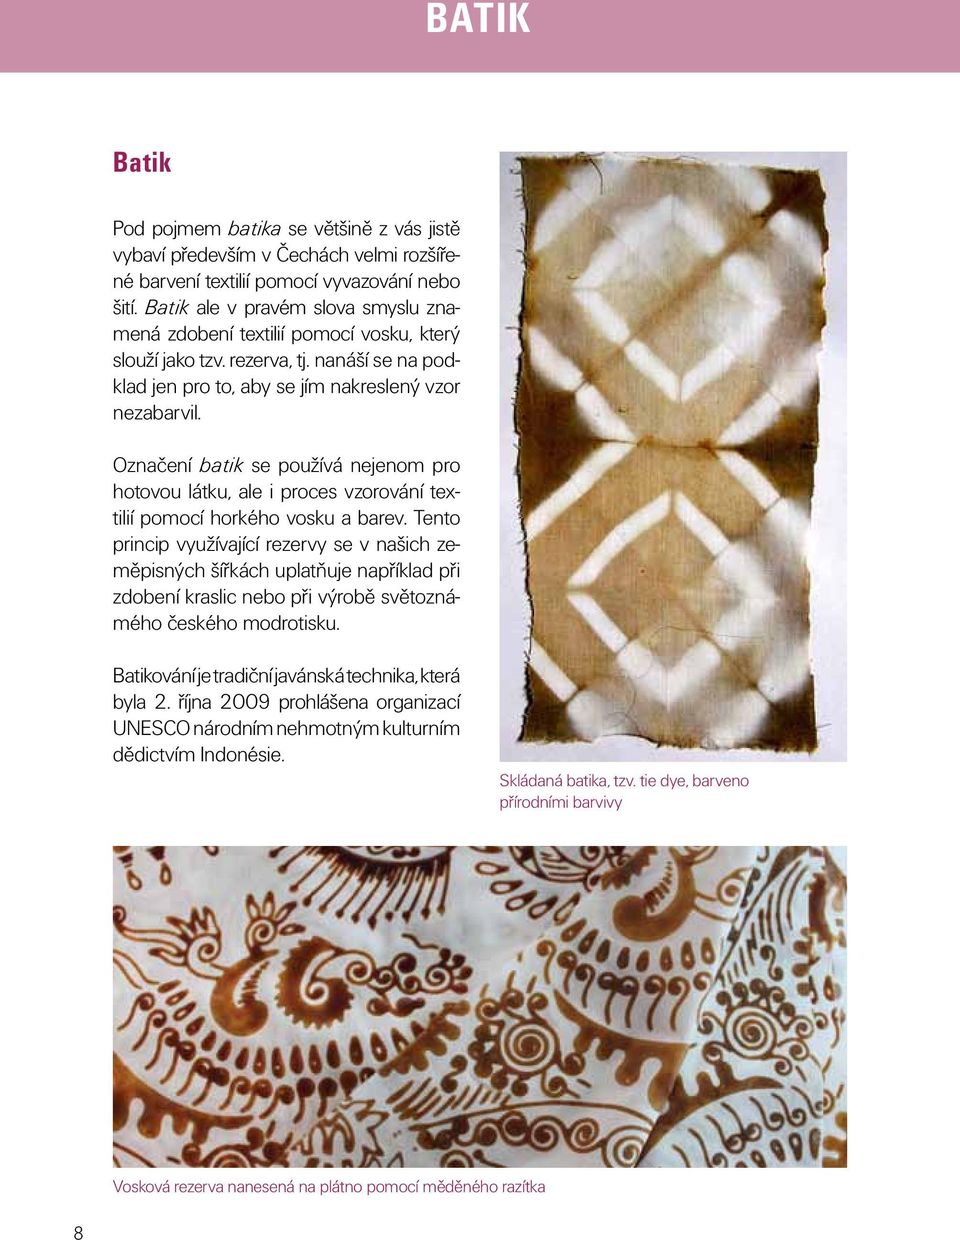 Označení batik se používá nejenom pro hotovou látku, ale i proces vzorování textilií pomocí horkého vosku a barev.